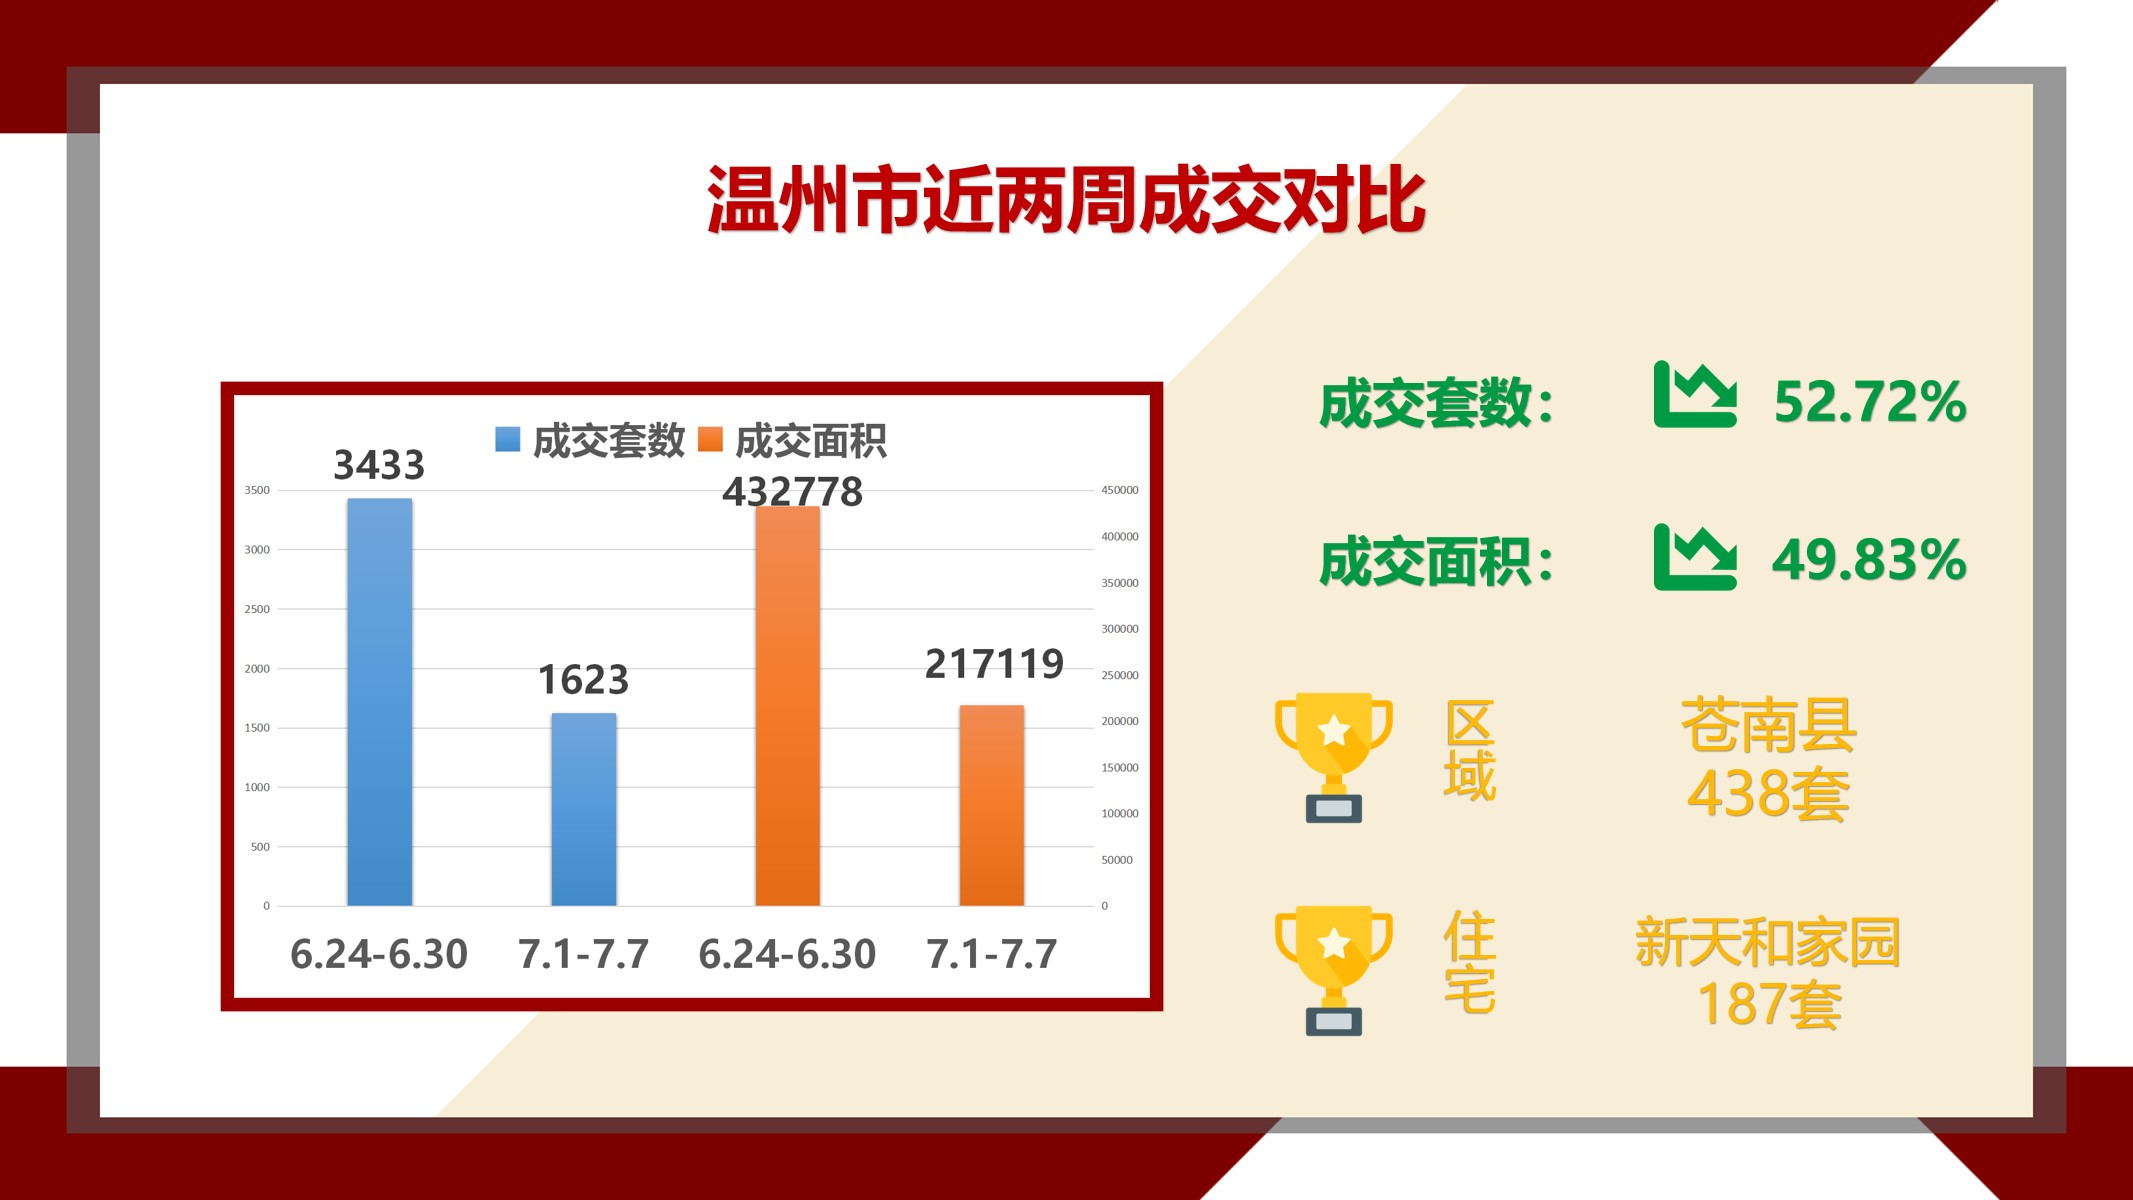 （7.1-7.7）温州新房成交仅1623套，同比降幅达52.72％